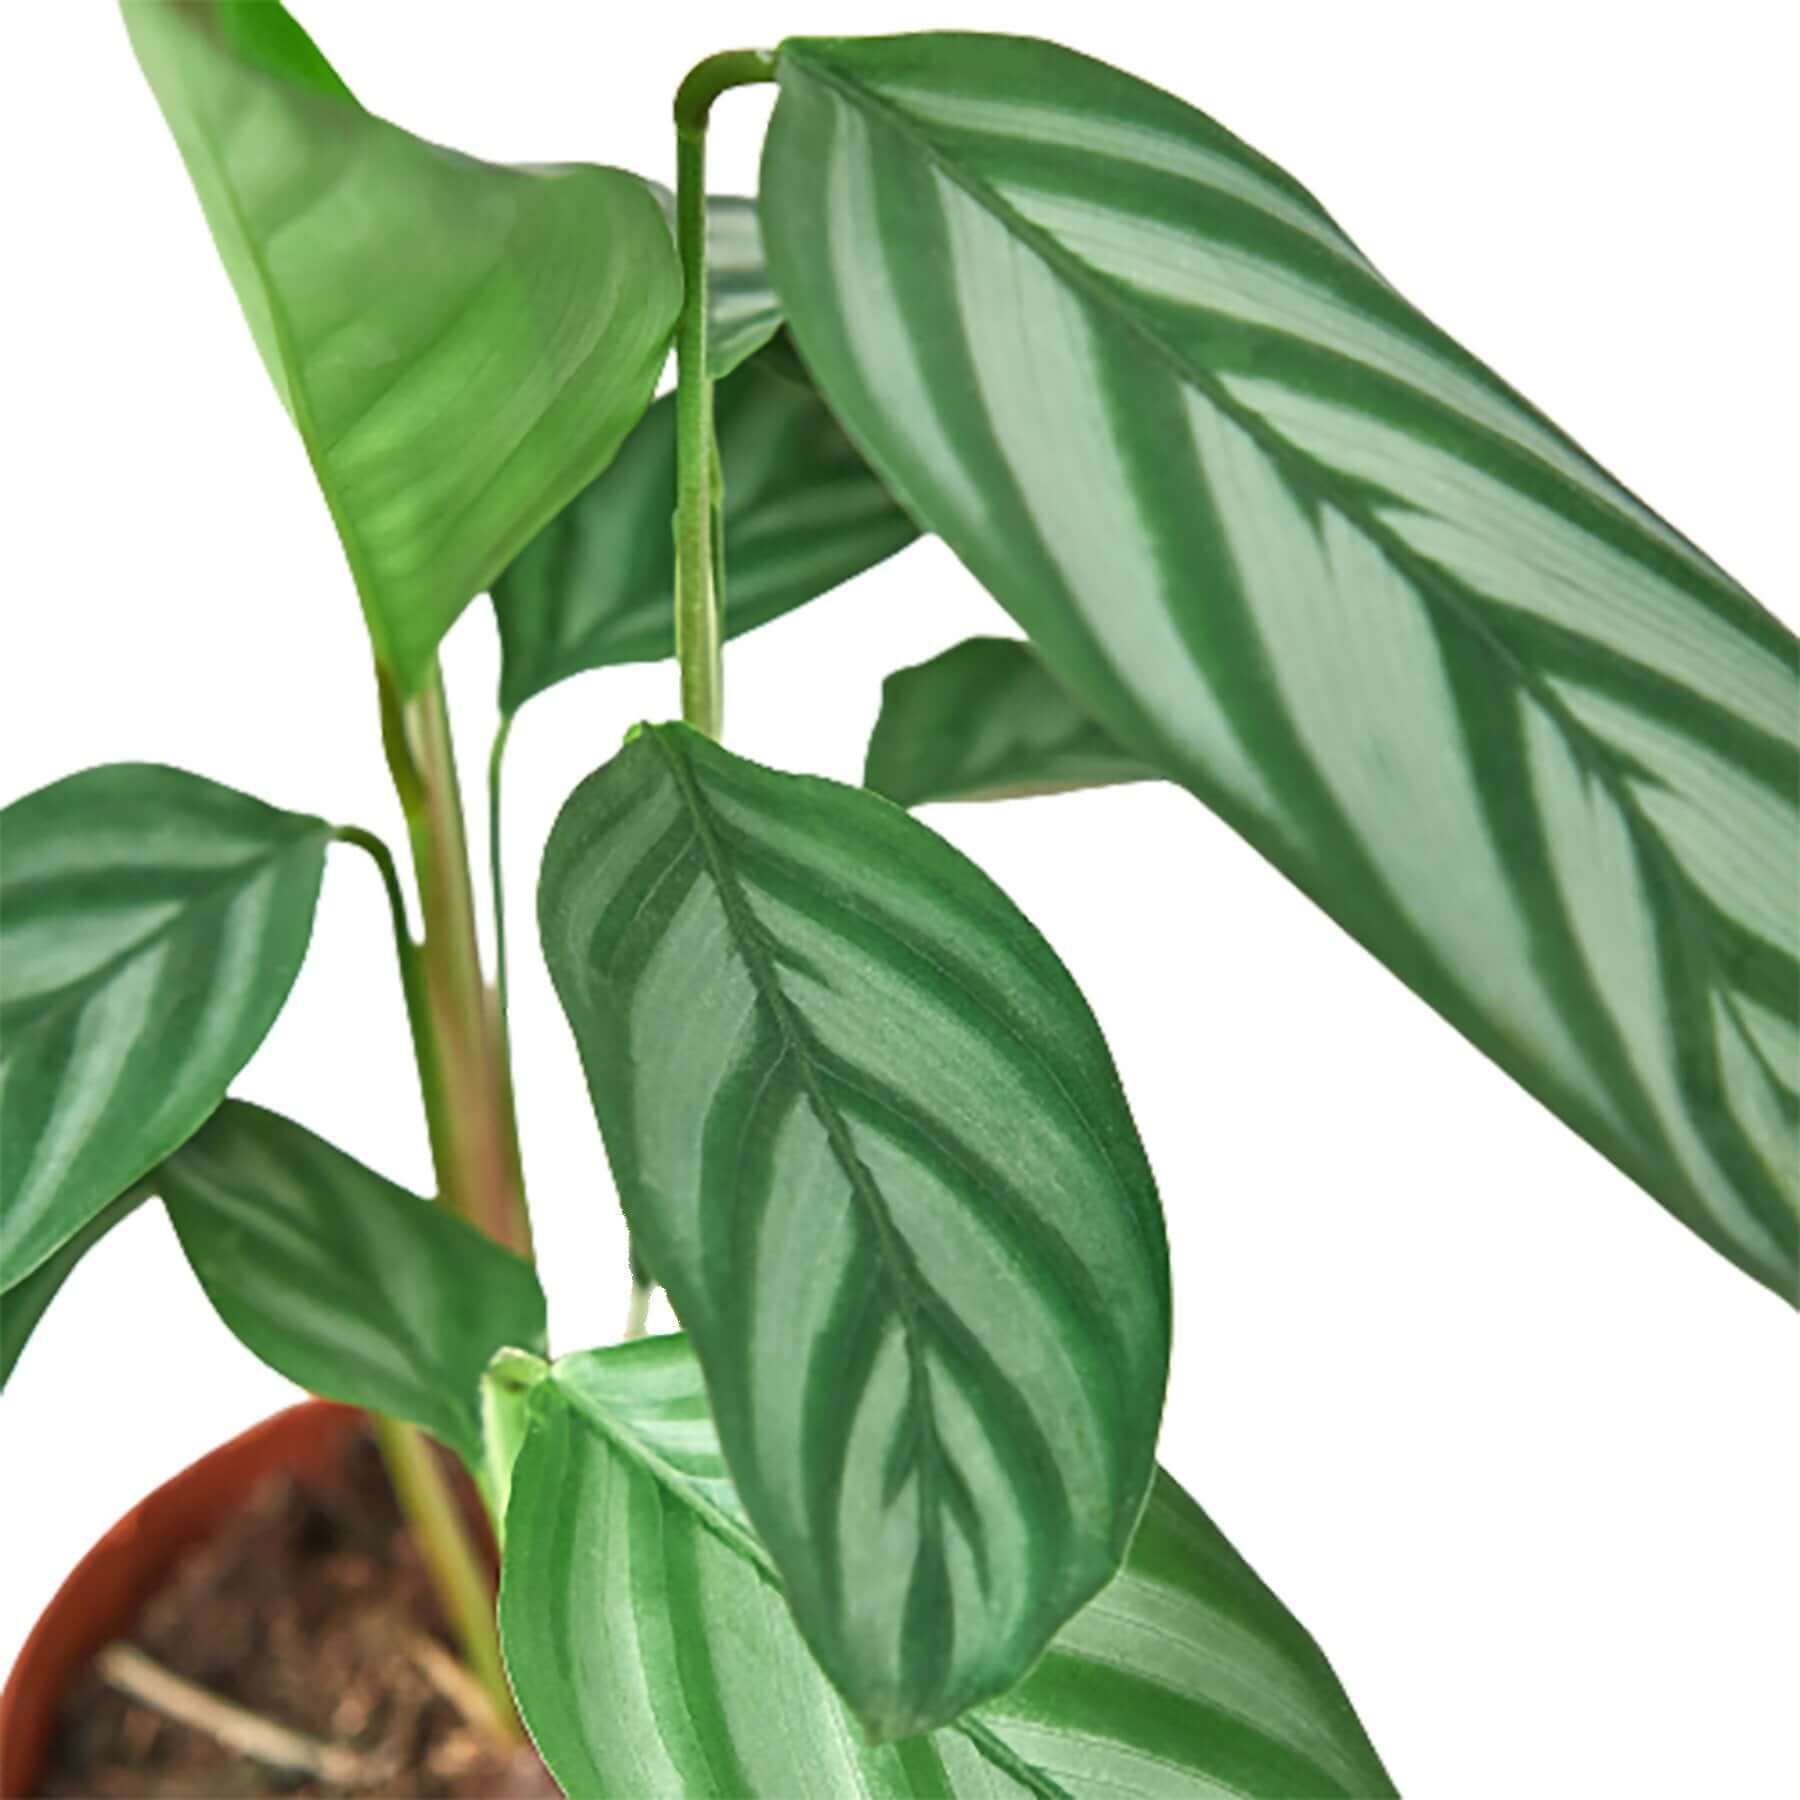 Calathea - Grey Star | Modern house plants that clean the air